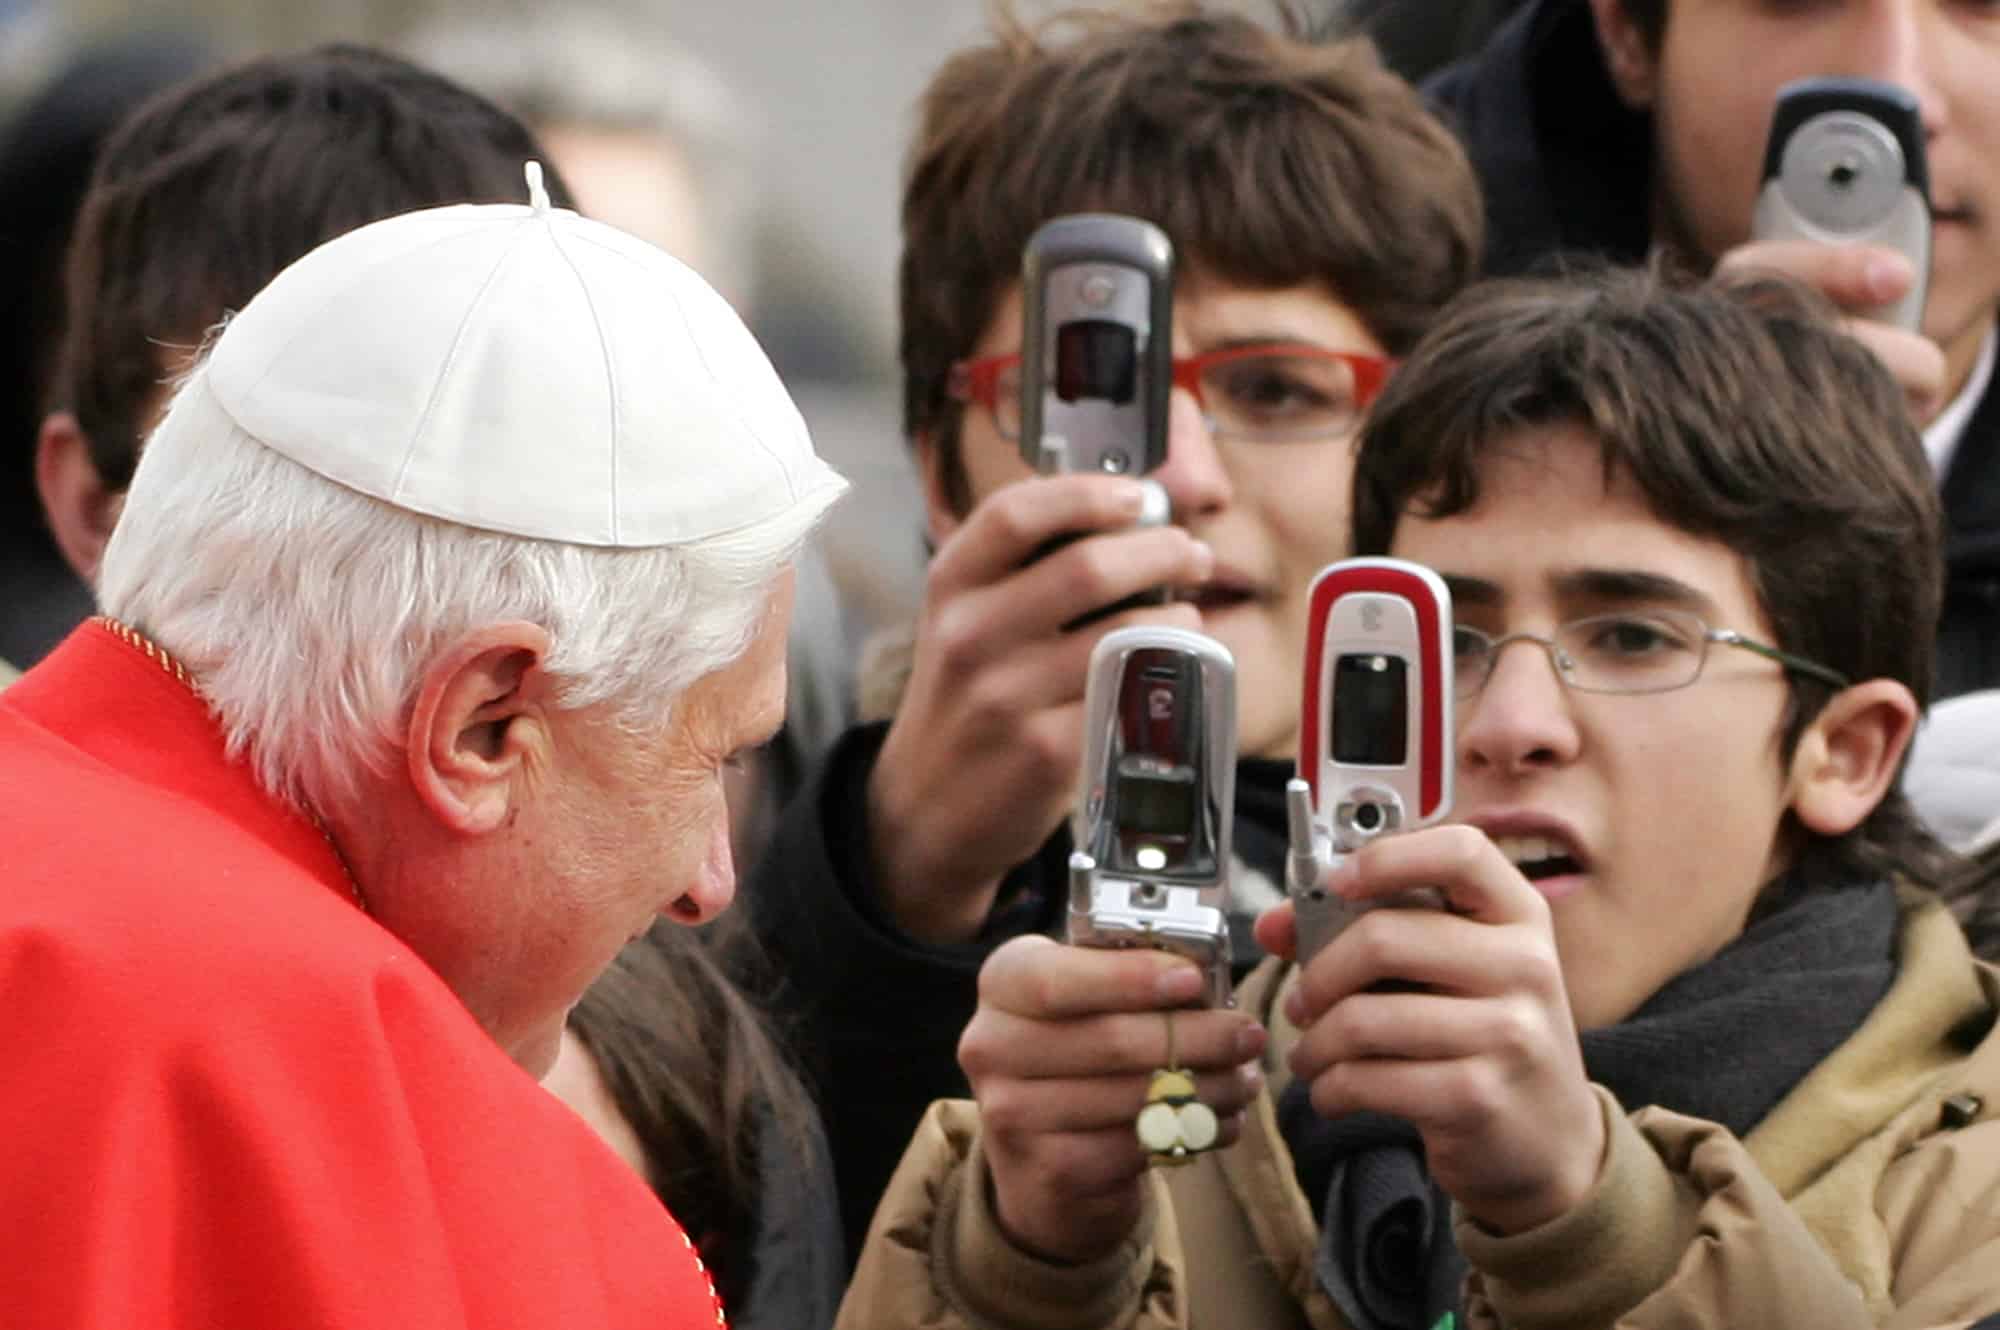 El Papa Benedicto XVI saluda a los peregrinos en la plaza de San Pedro en el Vaticano durante su audiencia general semanal, el 28 de diciembre de 2005. El pontífice oró por las víctimas del terremoto y tsunami asiáticos del año 2004, que mató al menos a 220.000 personas.